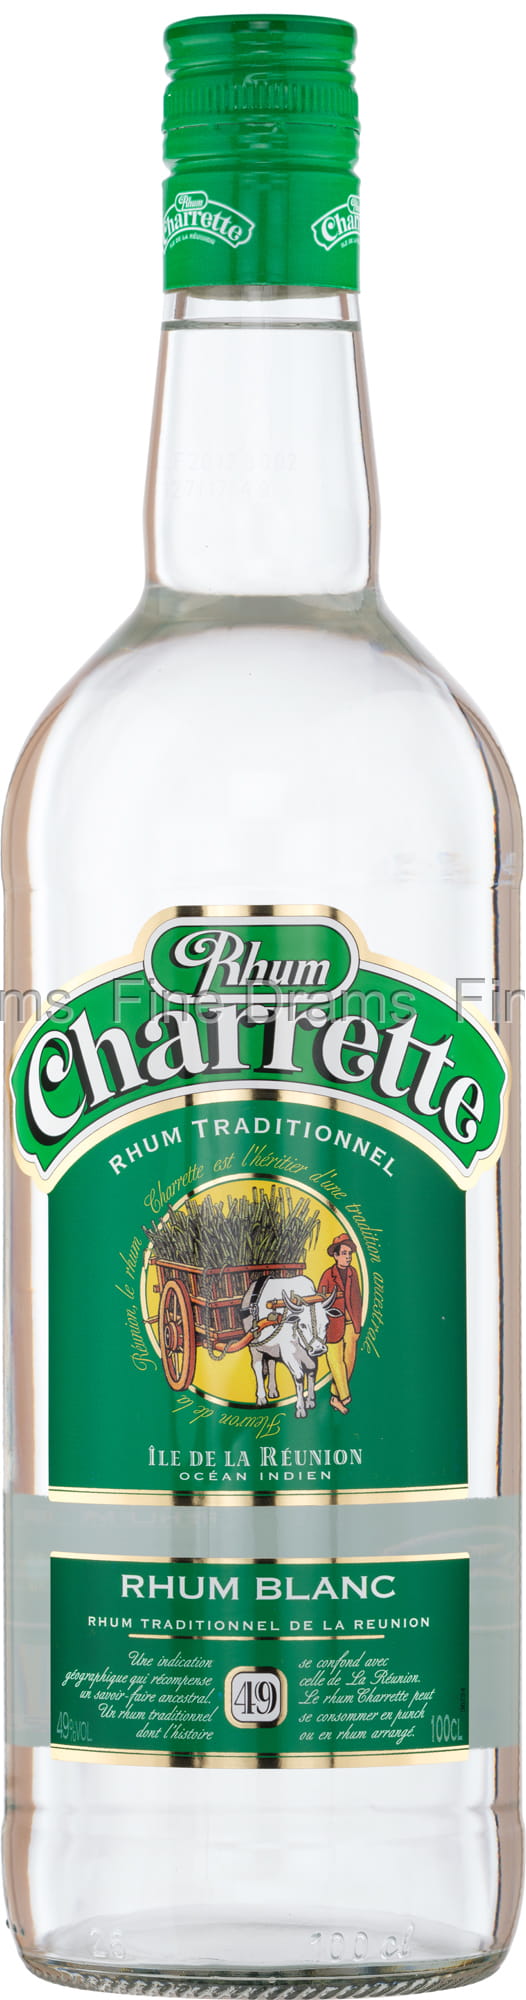 Charrette Rhum Blanc 49% (1 Liter)